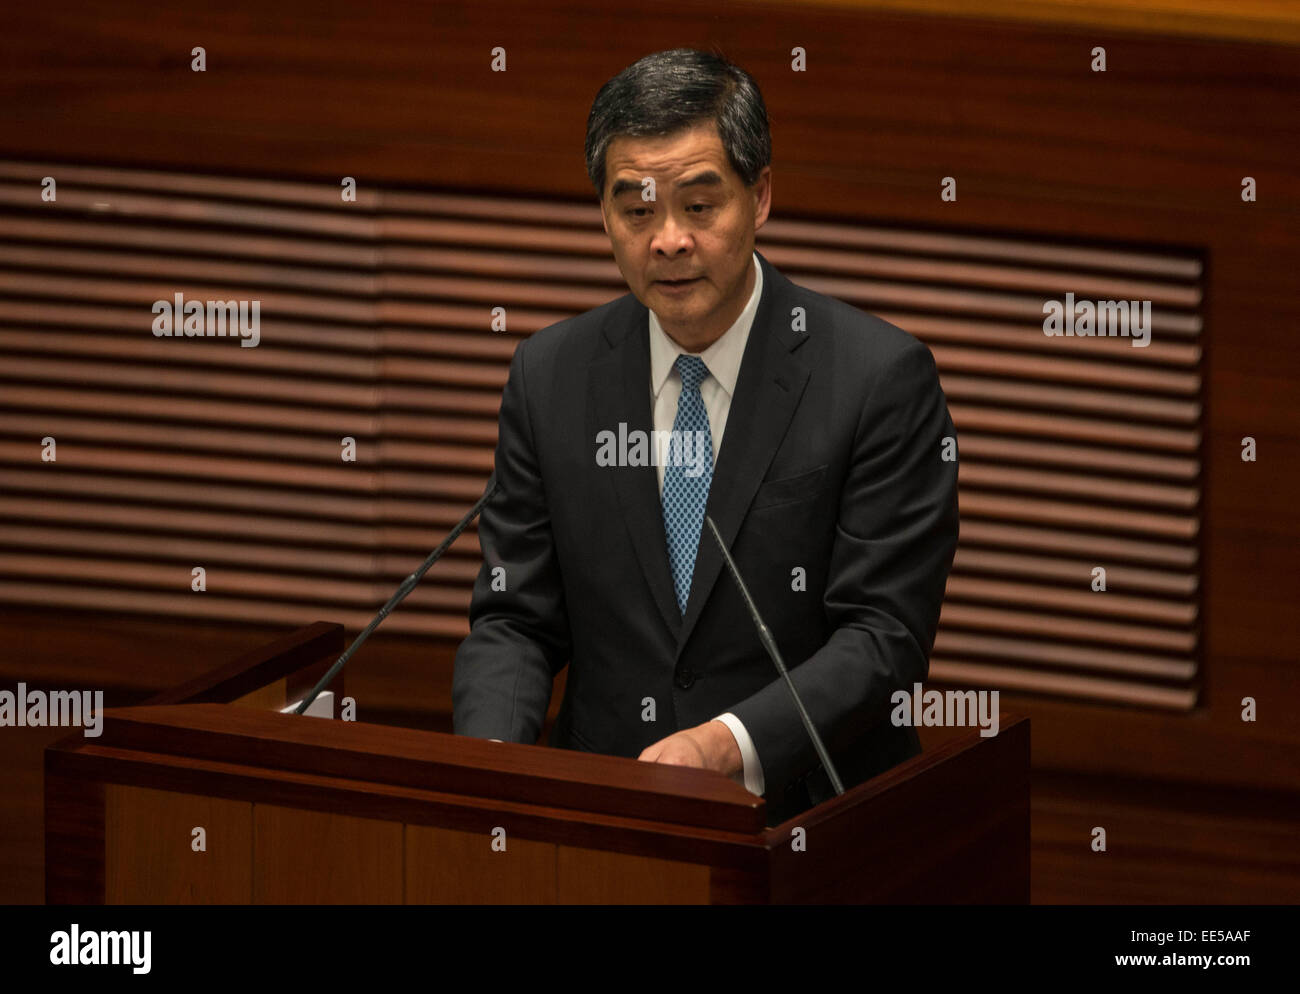 Hong Kong, China. 14th Jan, 2015. Hong Kong Chief Executive Leung Chun-ying delivers his policy address for the year of 2015 in Hong Kong, south China, Jan. 14, 2015. © Lui Siu Wai/Xinhua/Alamy Live News Stock Photo